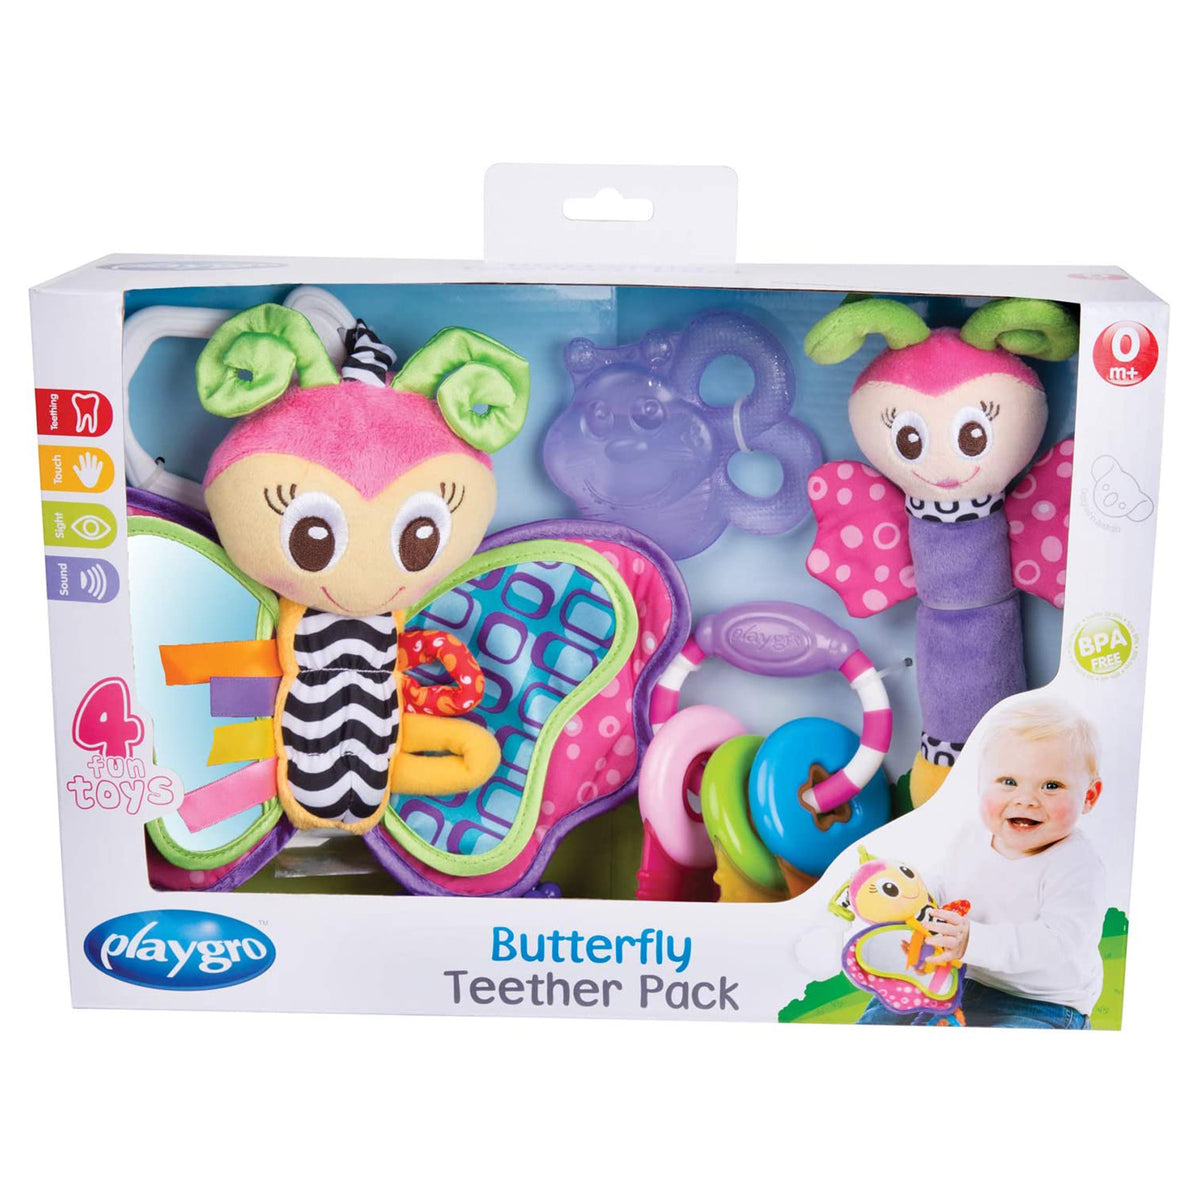 Butterfly toys set